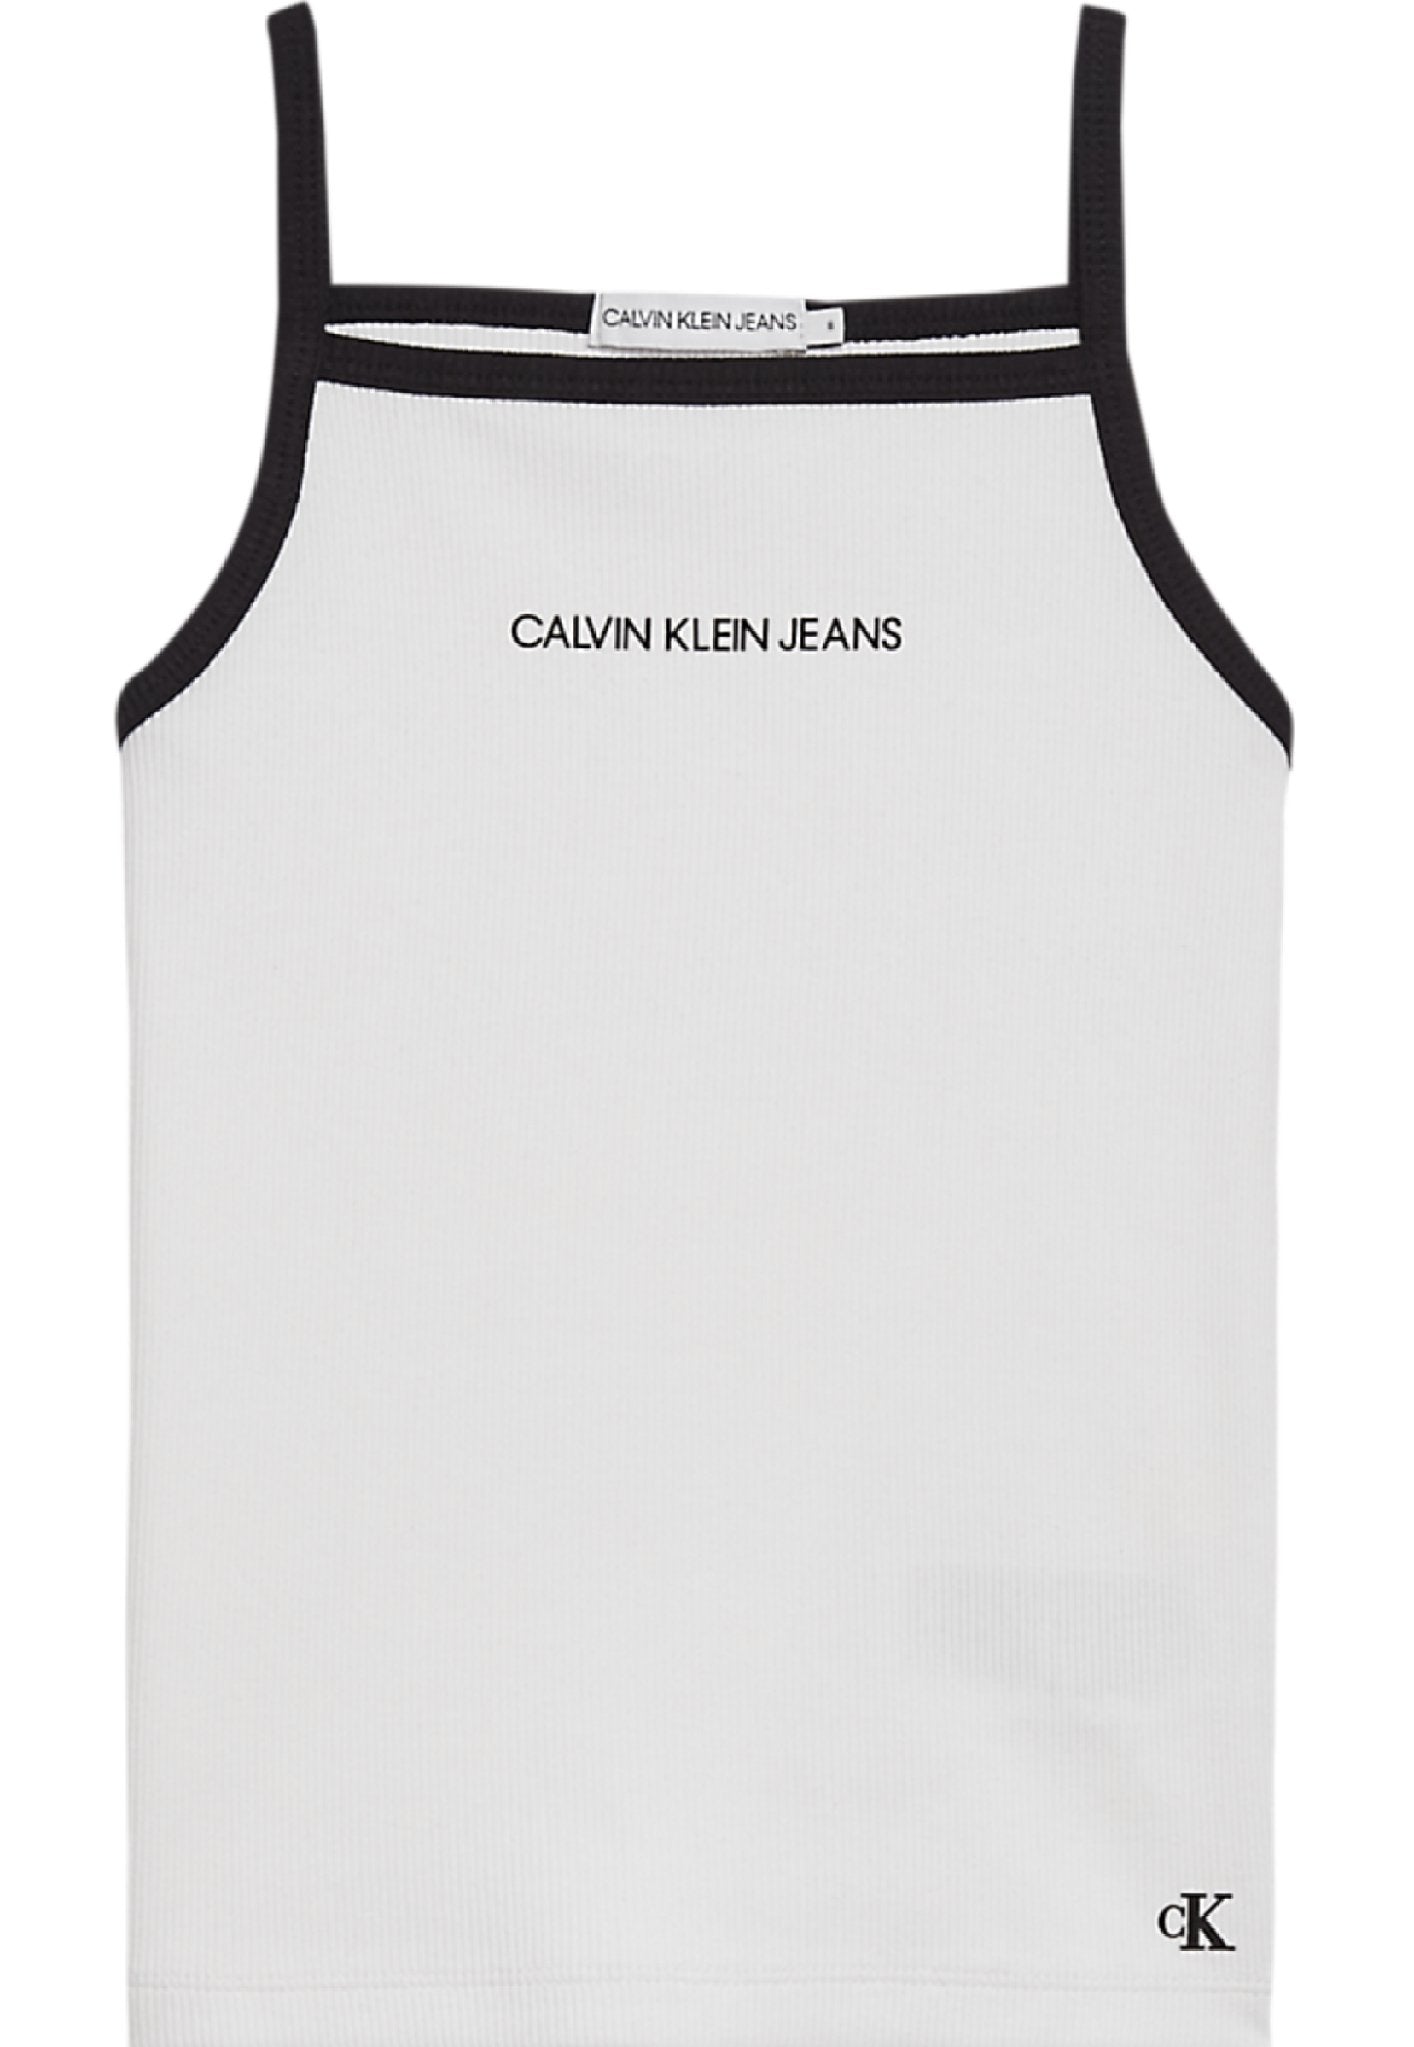 Meisjes Rib Sleeveless Top van Calvin Klein in de kleur Wit in maat 176.